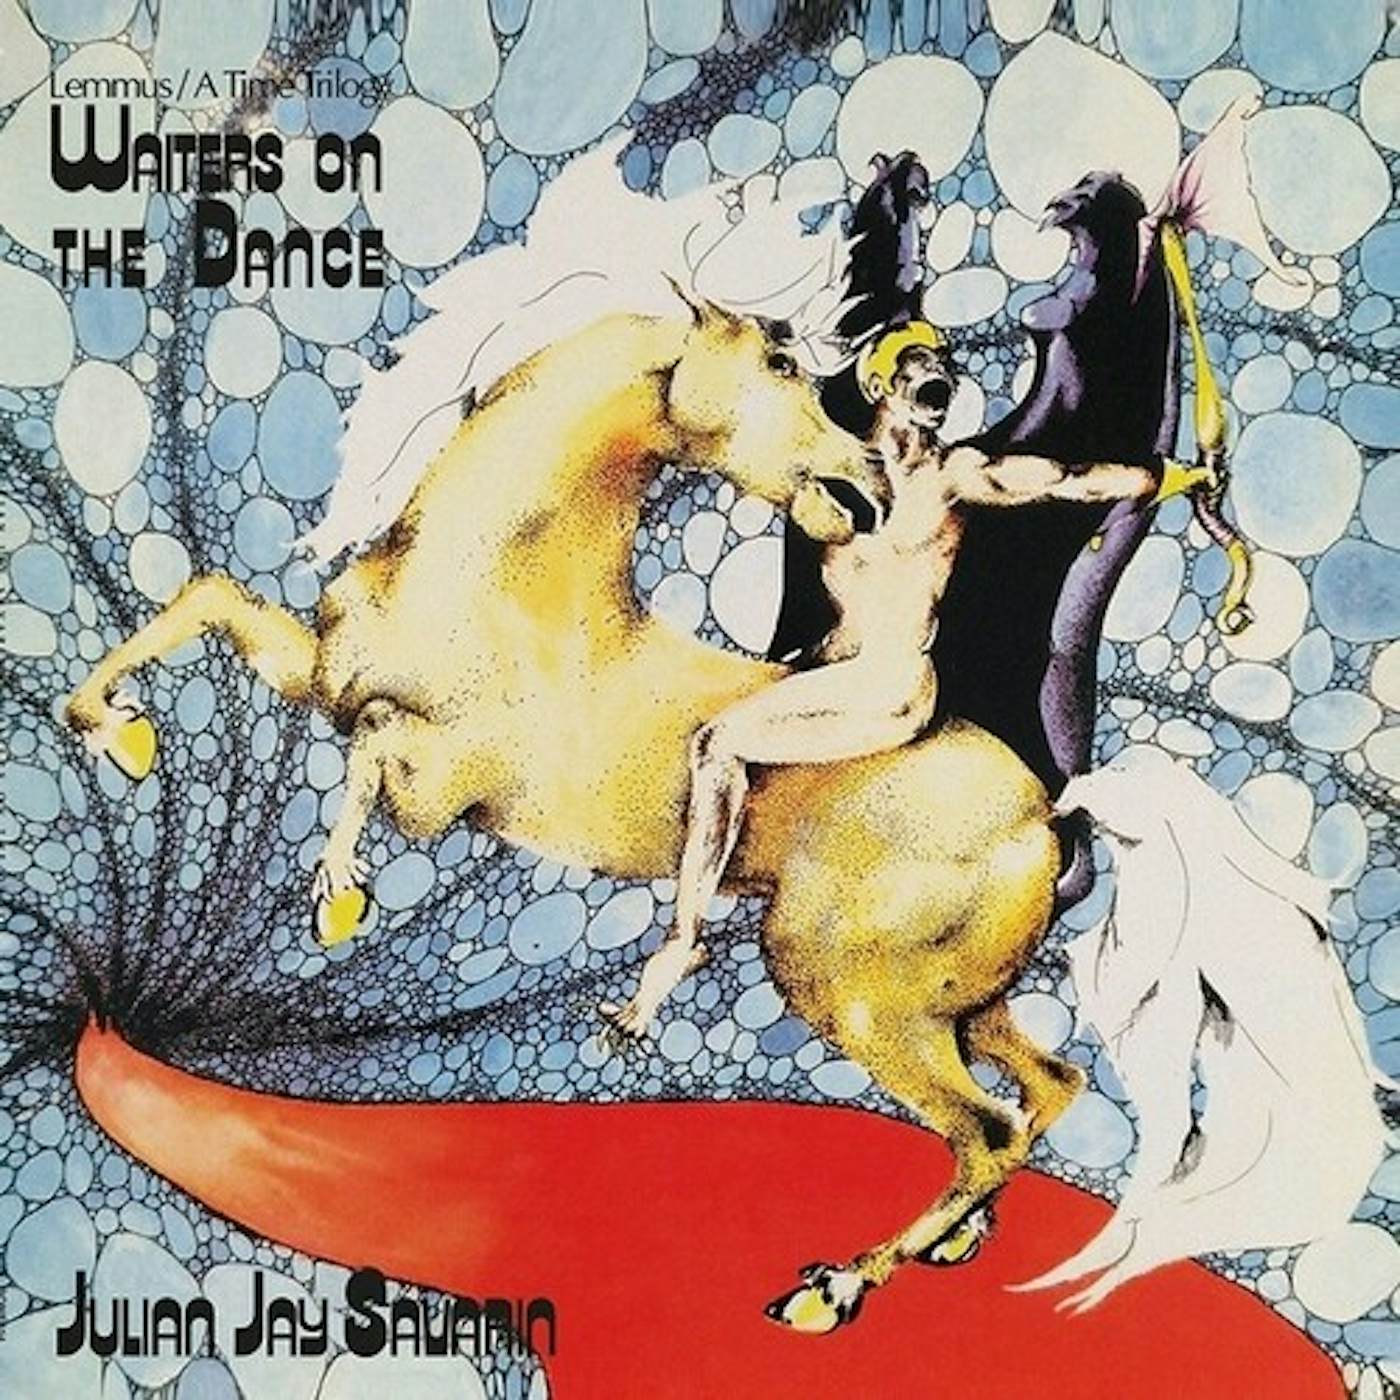 Julian Jay Savarin WAITERS ON THE DANCE Vinyl Record